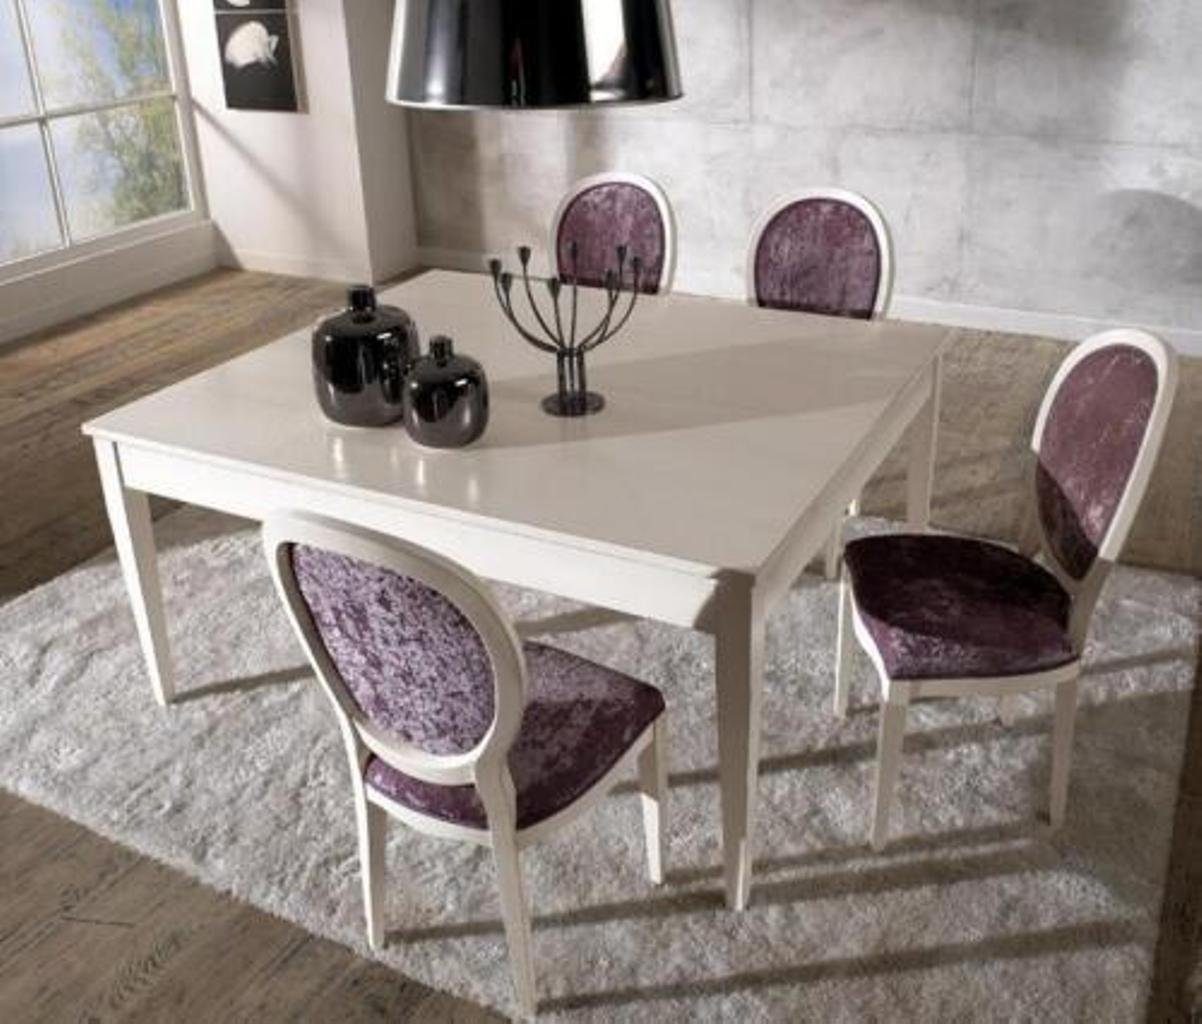 JVmoebel Modern Esstisch, Stil Esstische Möbel Holz Esstisch Tische Tisch Italienische